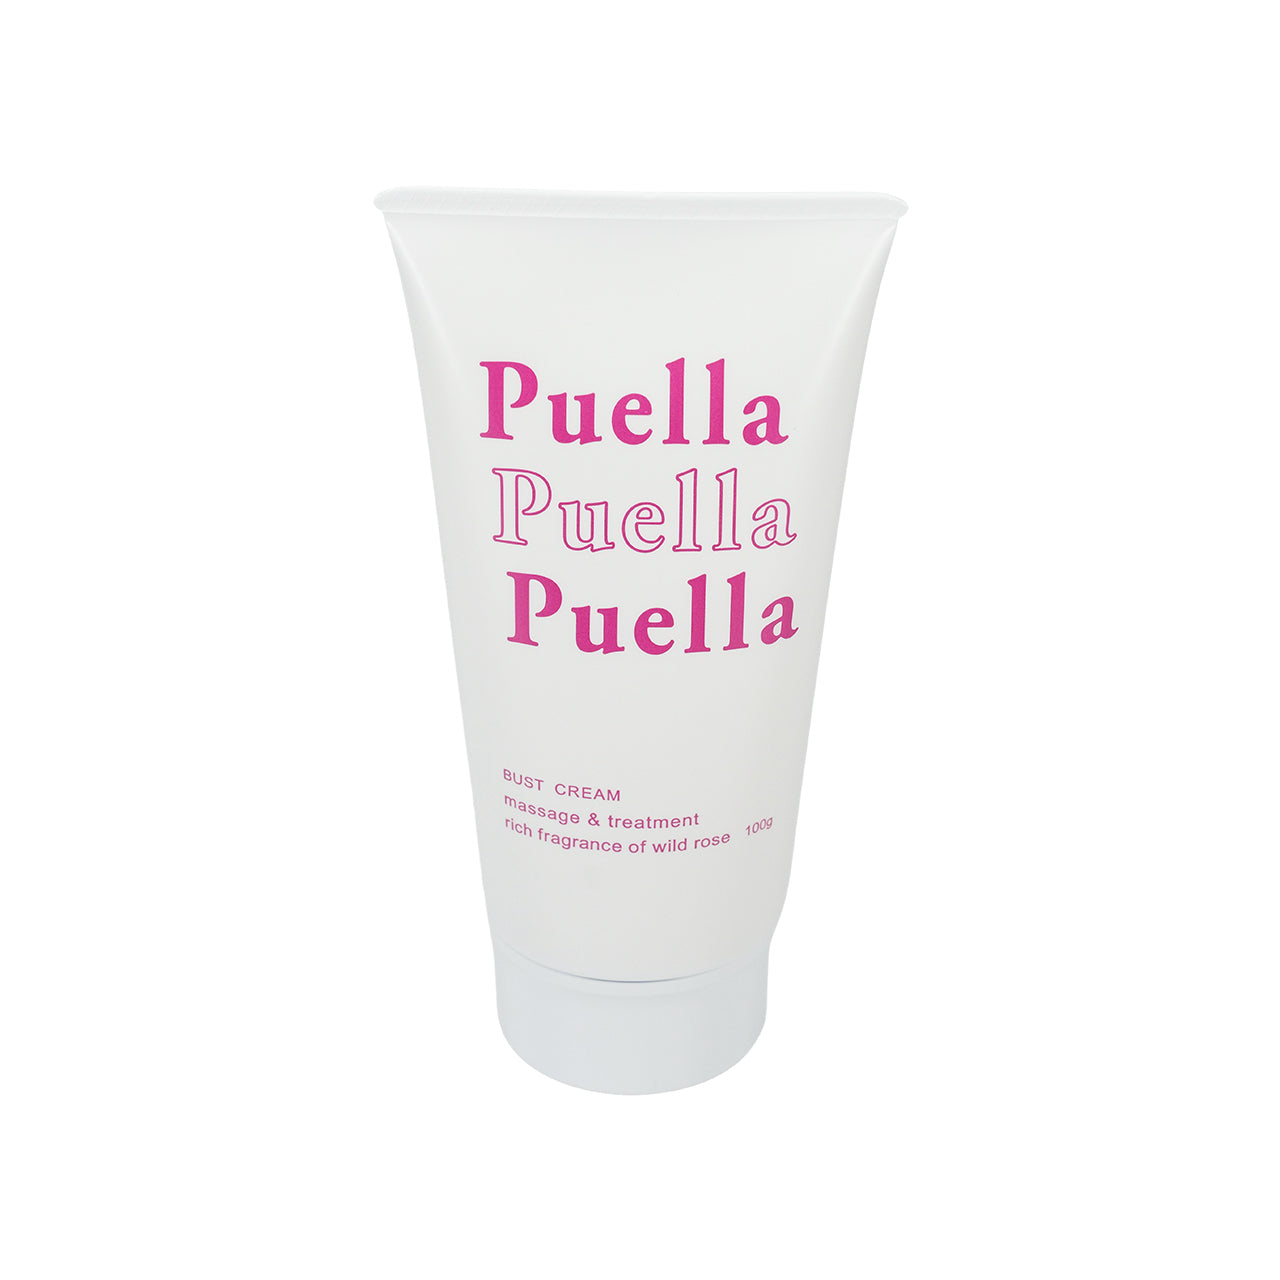 Puella Bust Cream 100g